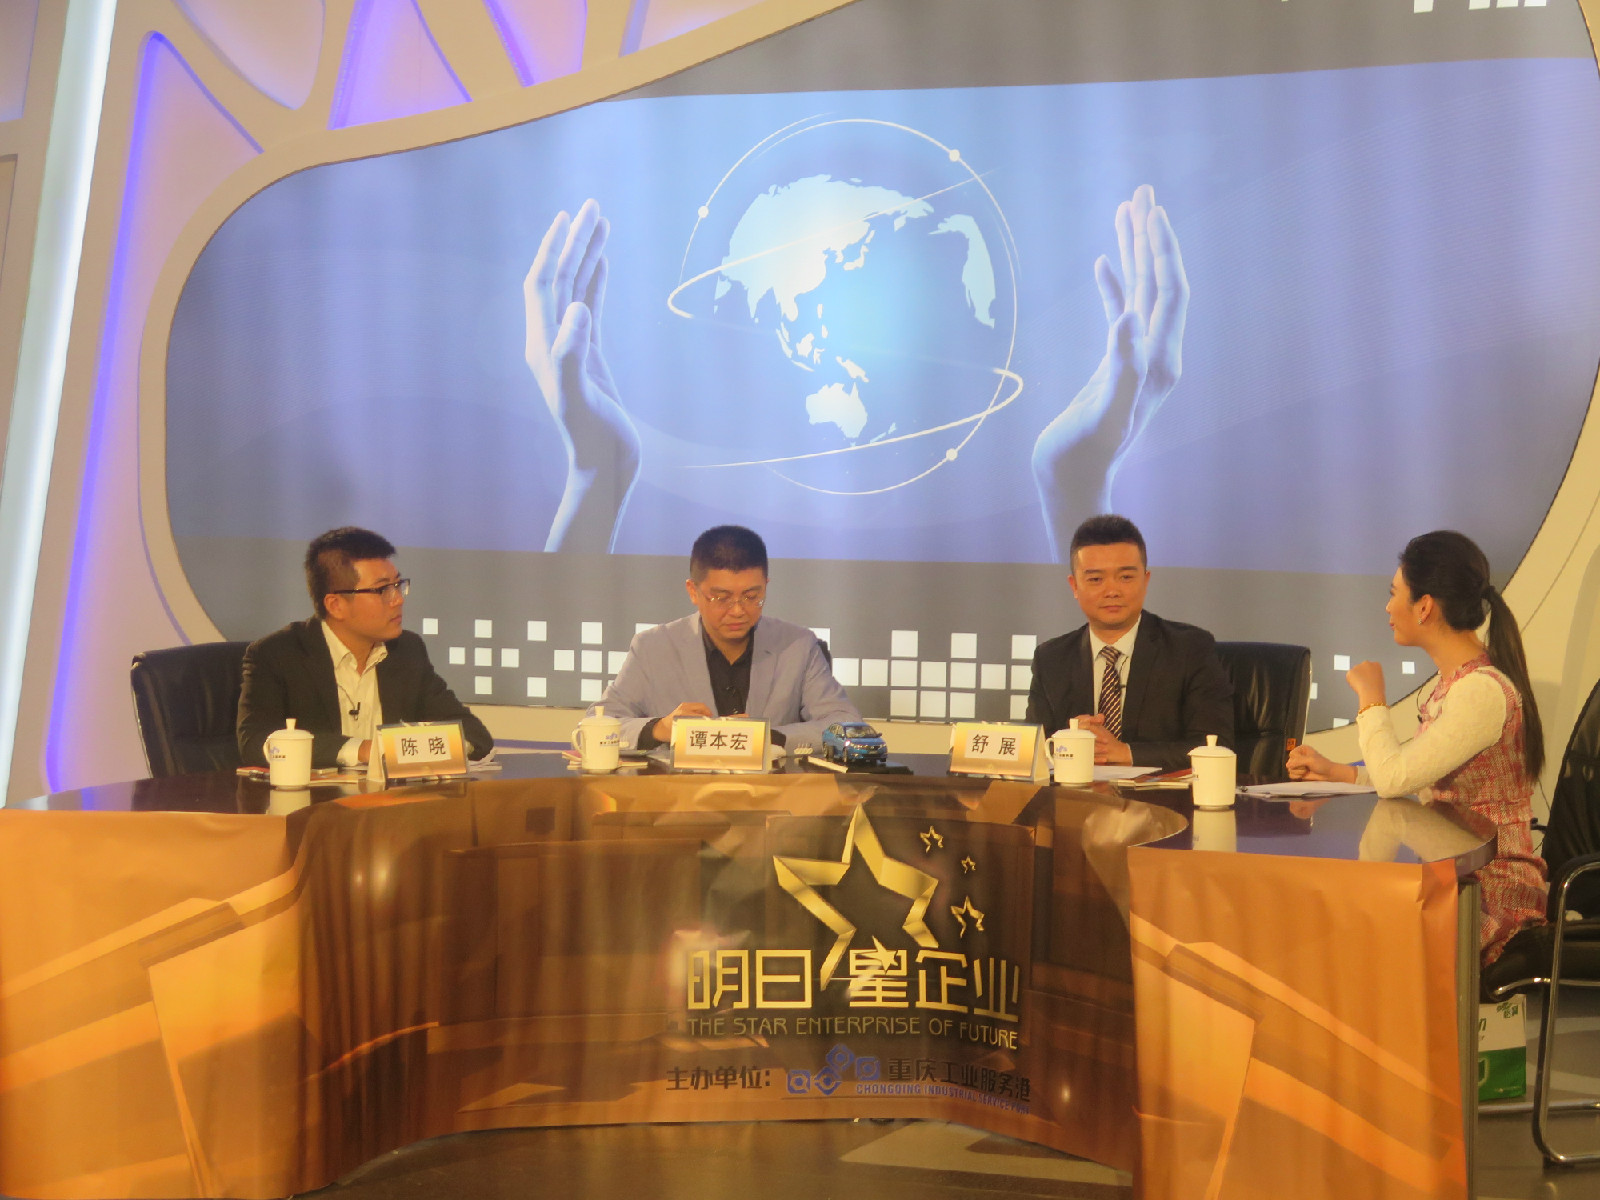 重慶工港明日星企業創新創業電視大賽開播